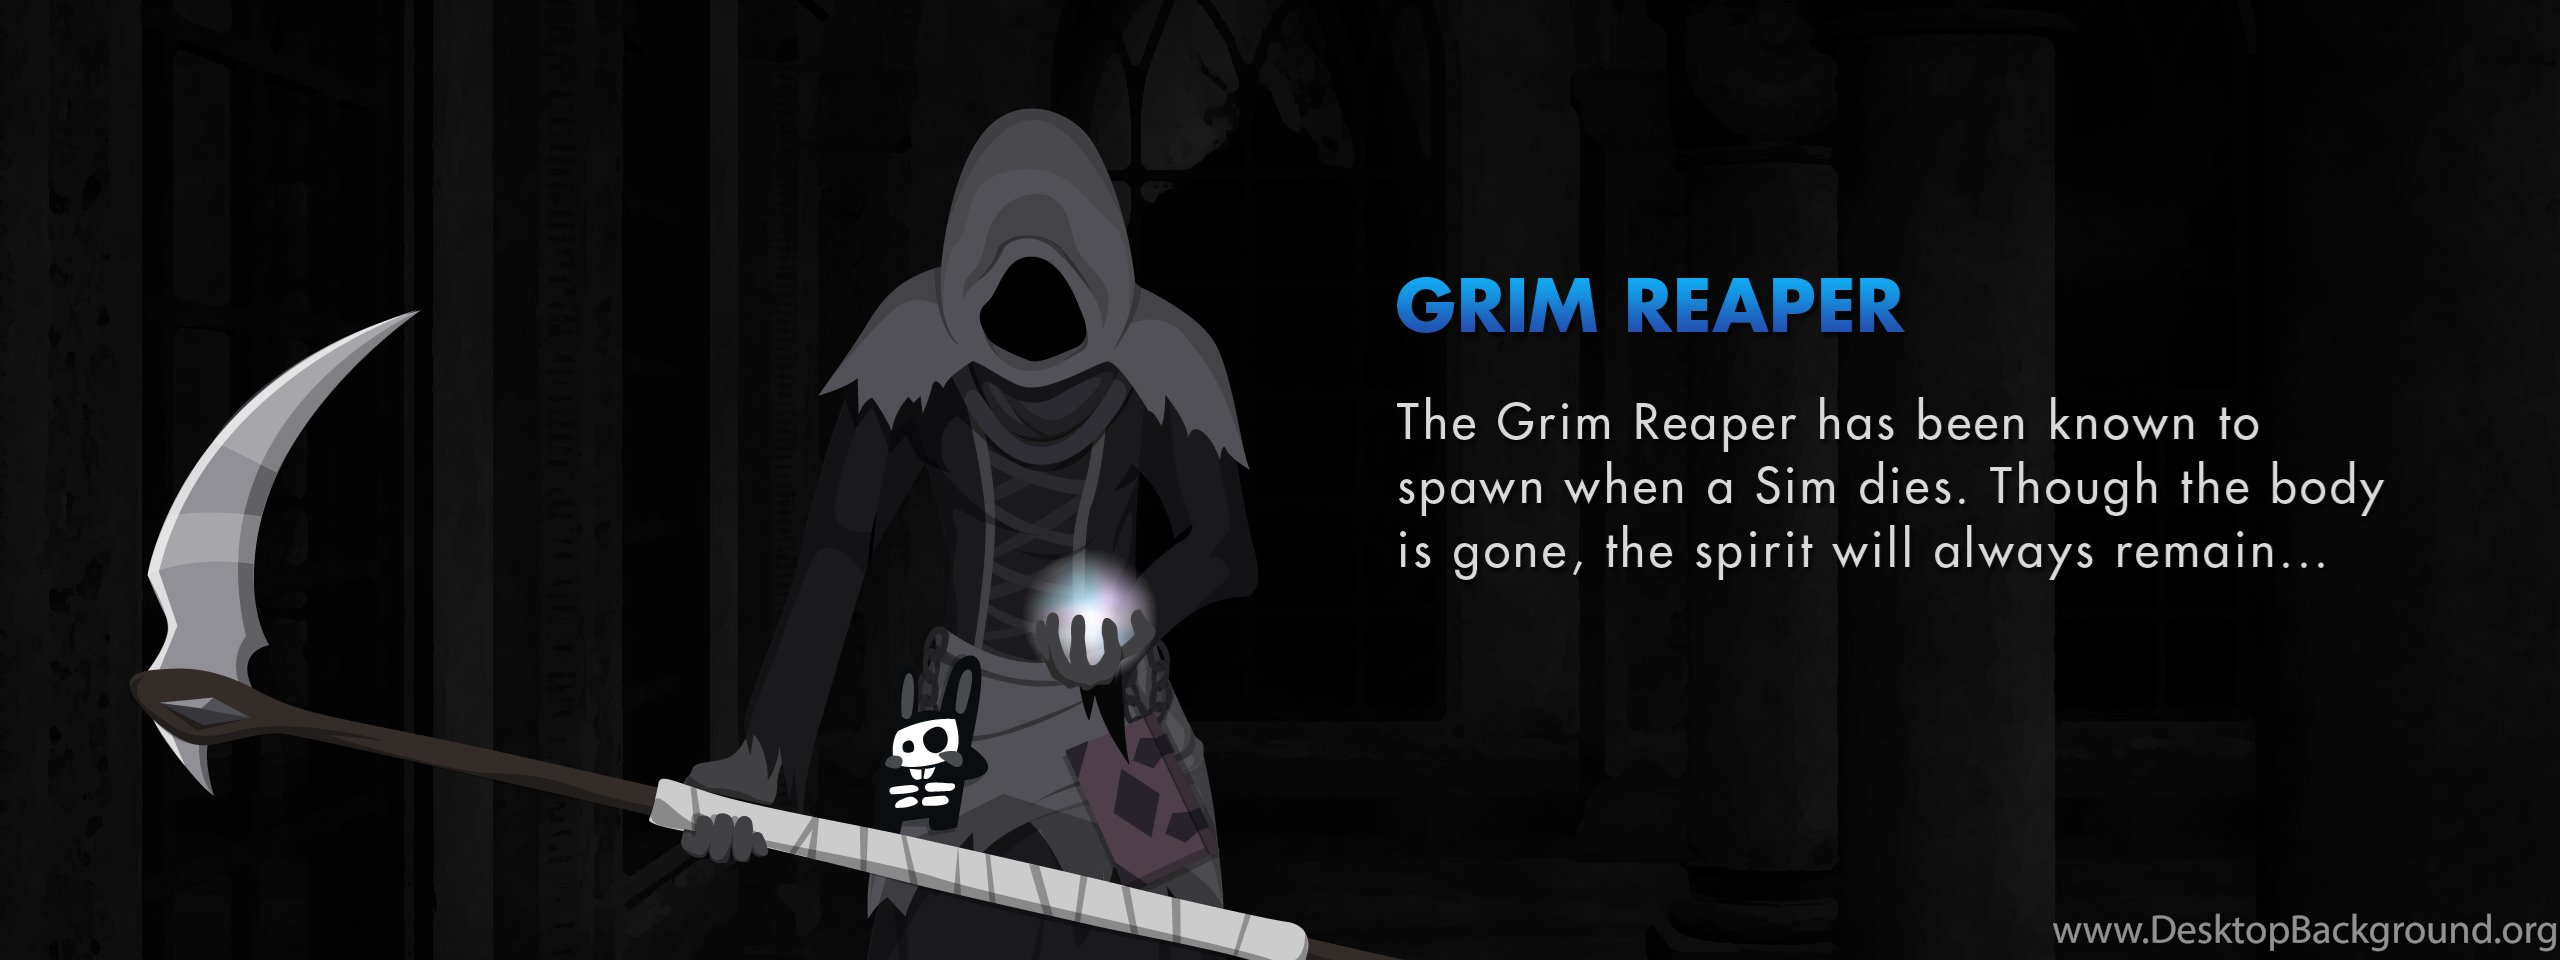 The grim reaper 2. SIMS 2 Grim Reaper. The SIMS 4 Grim Reaper. Симс 2 Жнец. Grim Reaper SIMS 2 SIMS 4.